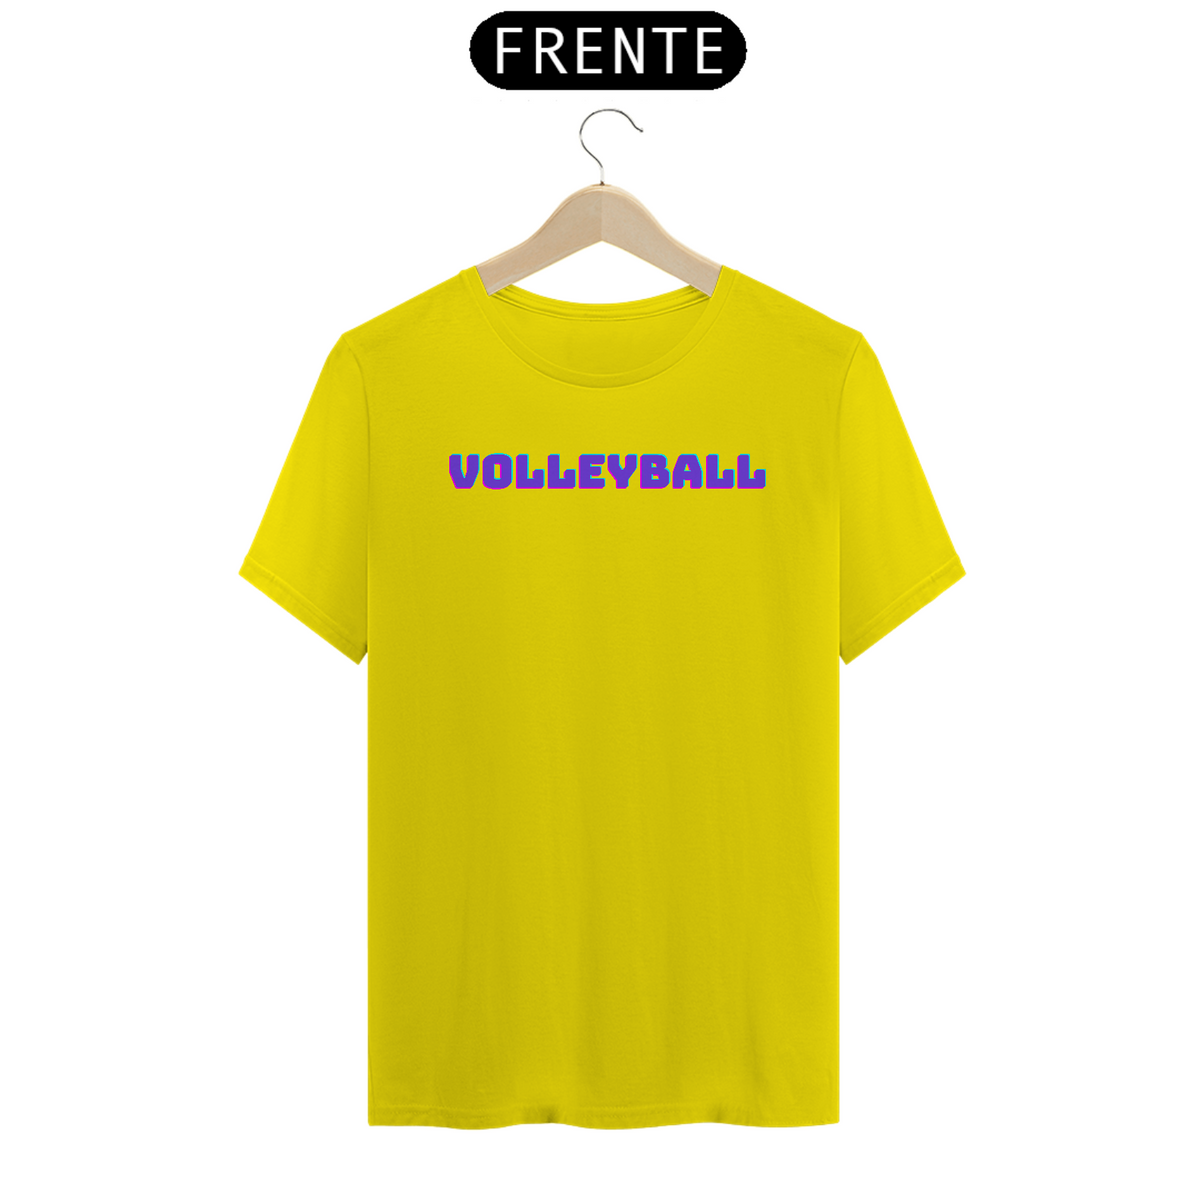 Nome do produto: Volleyball 1